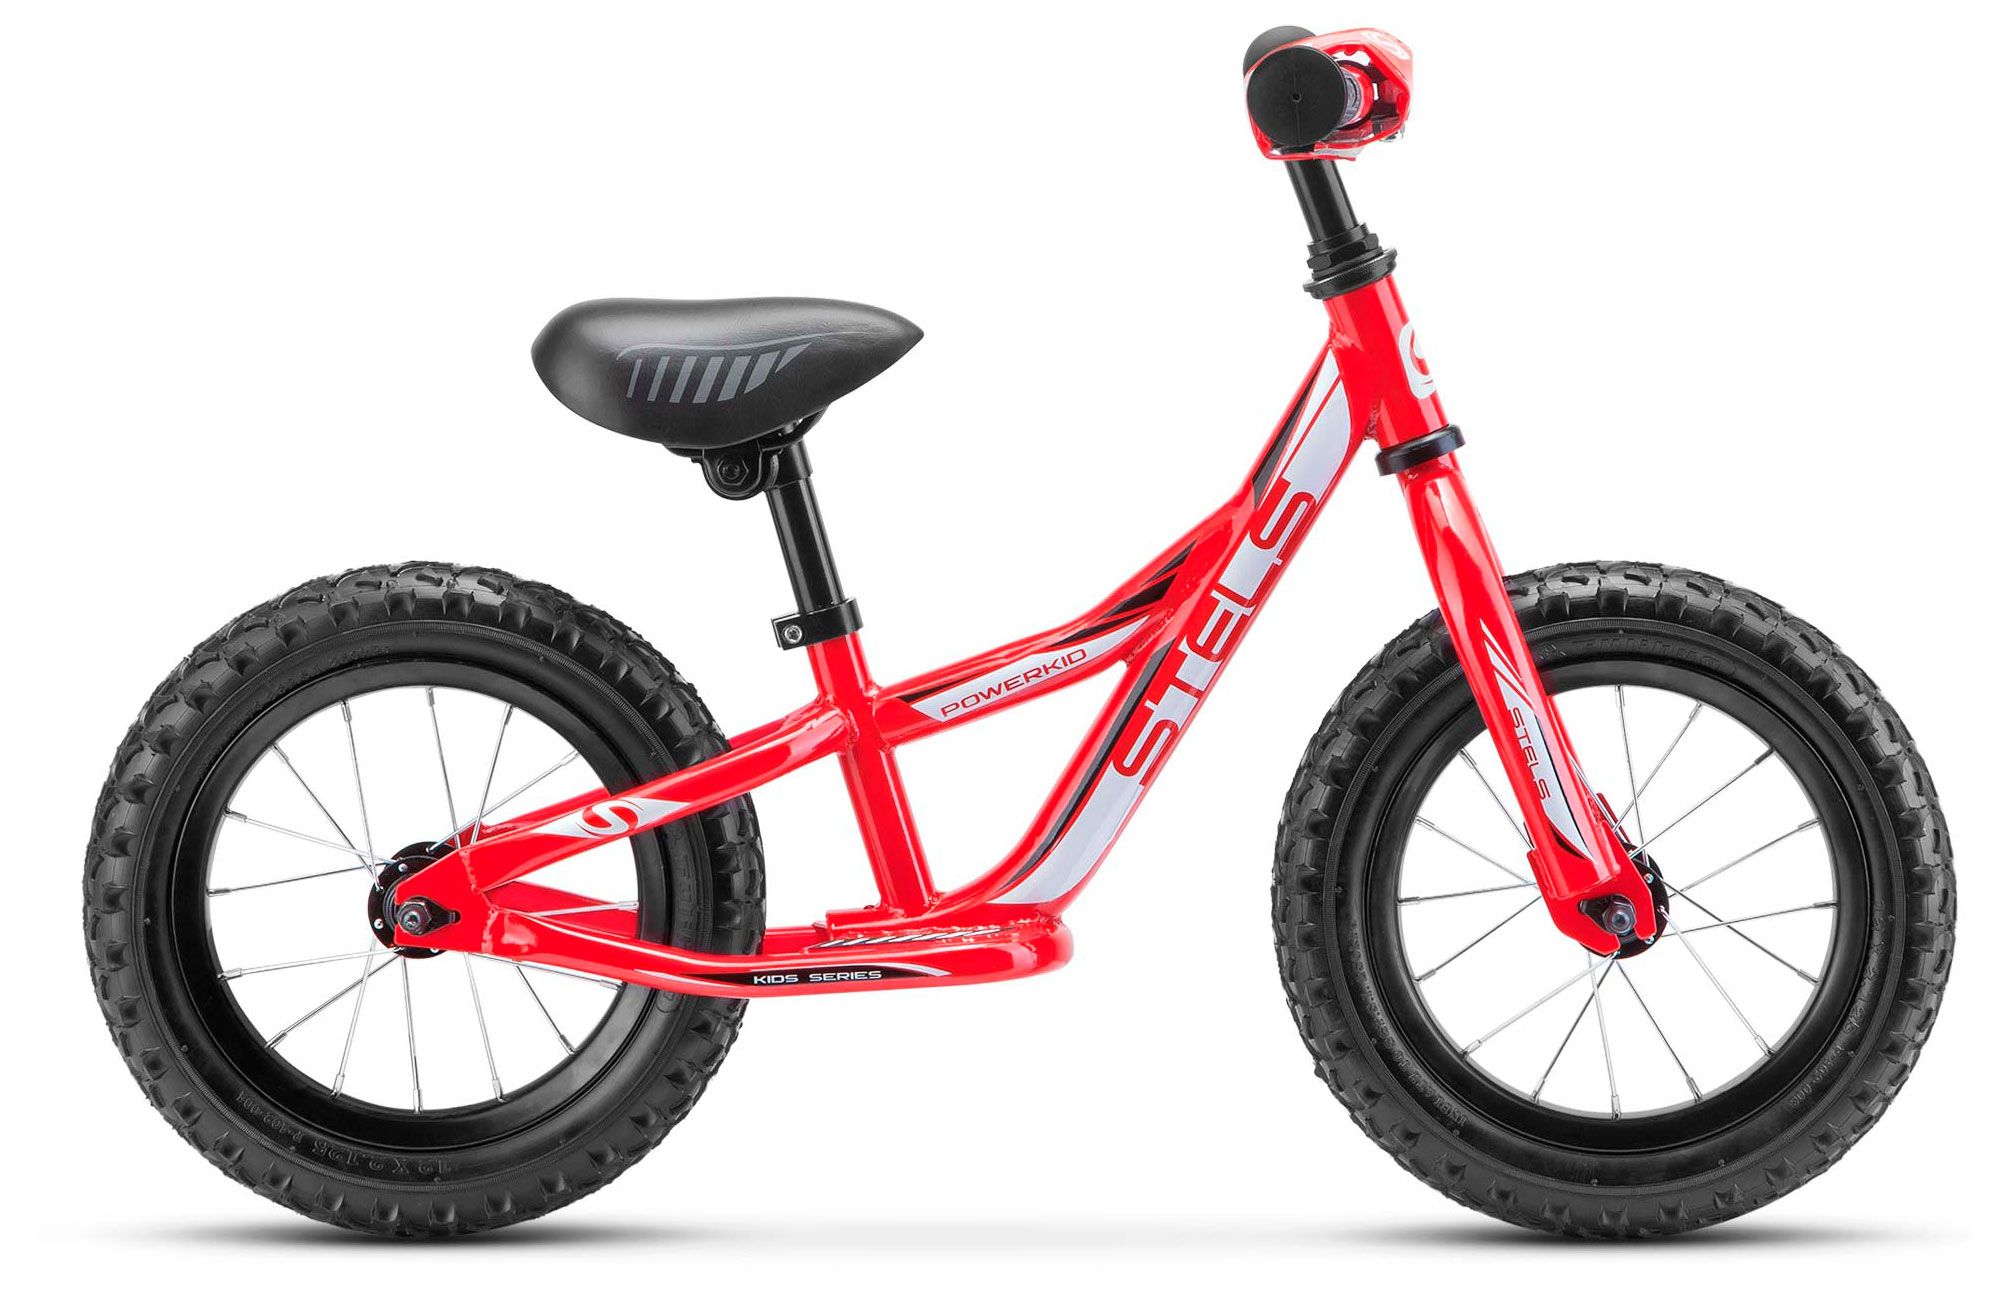  Отзывы о Детском велосипеде Stels Powerkid 12 (Boy) V020 2018